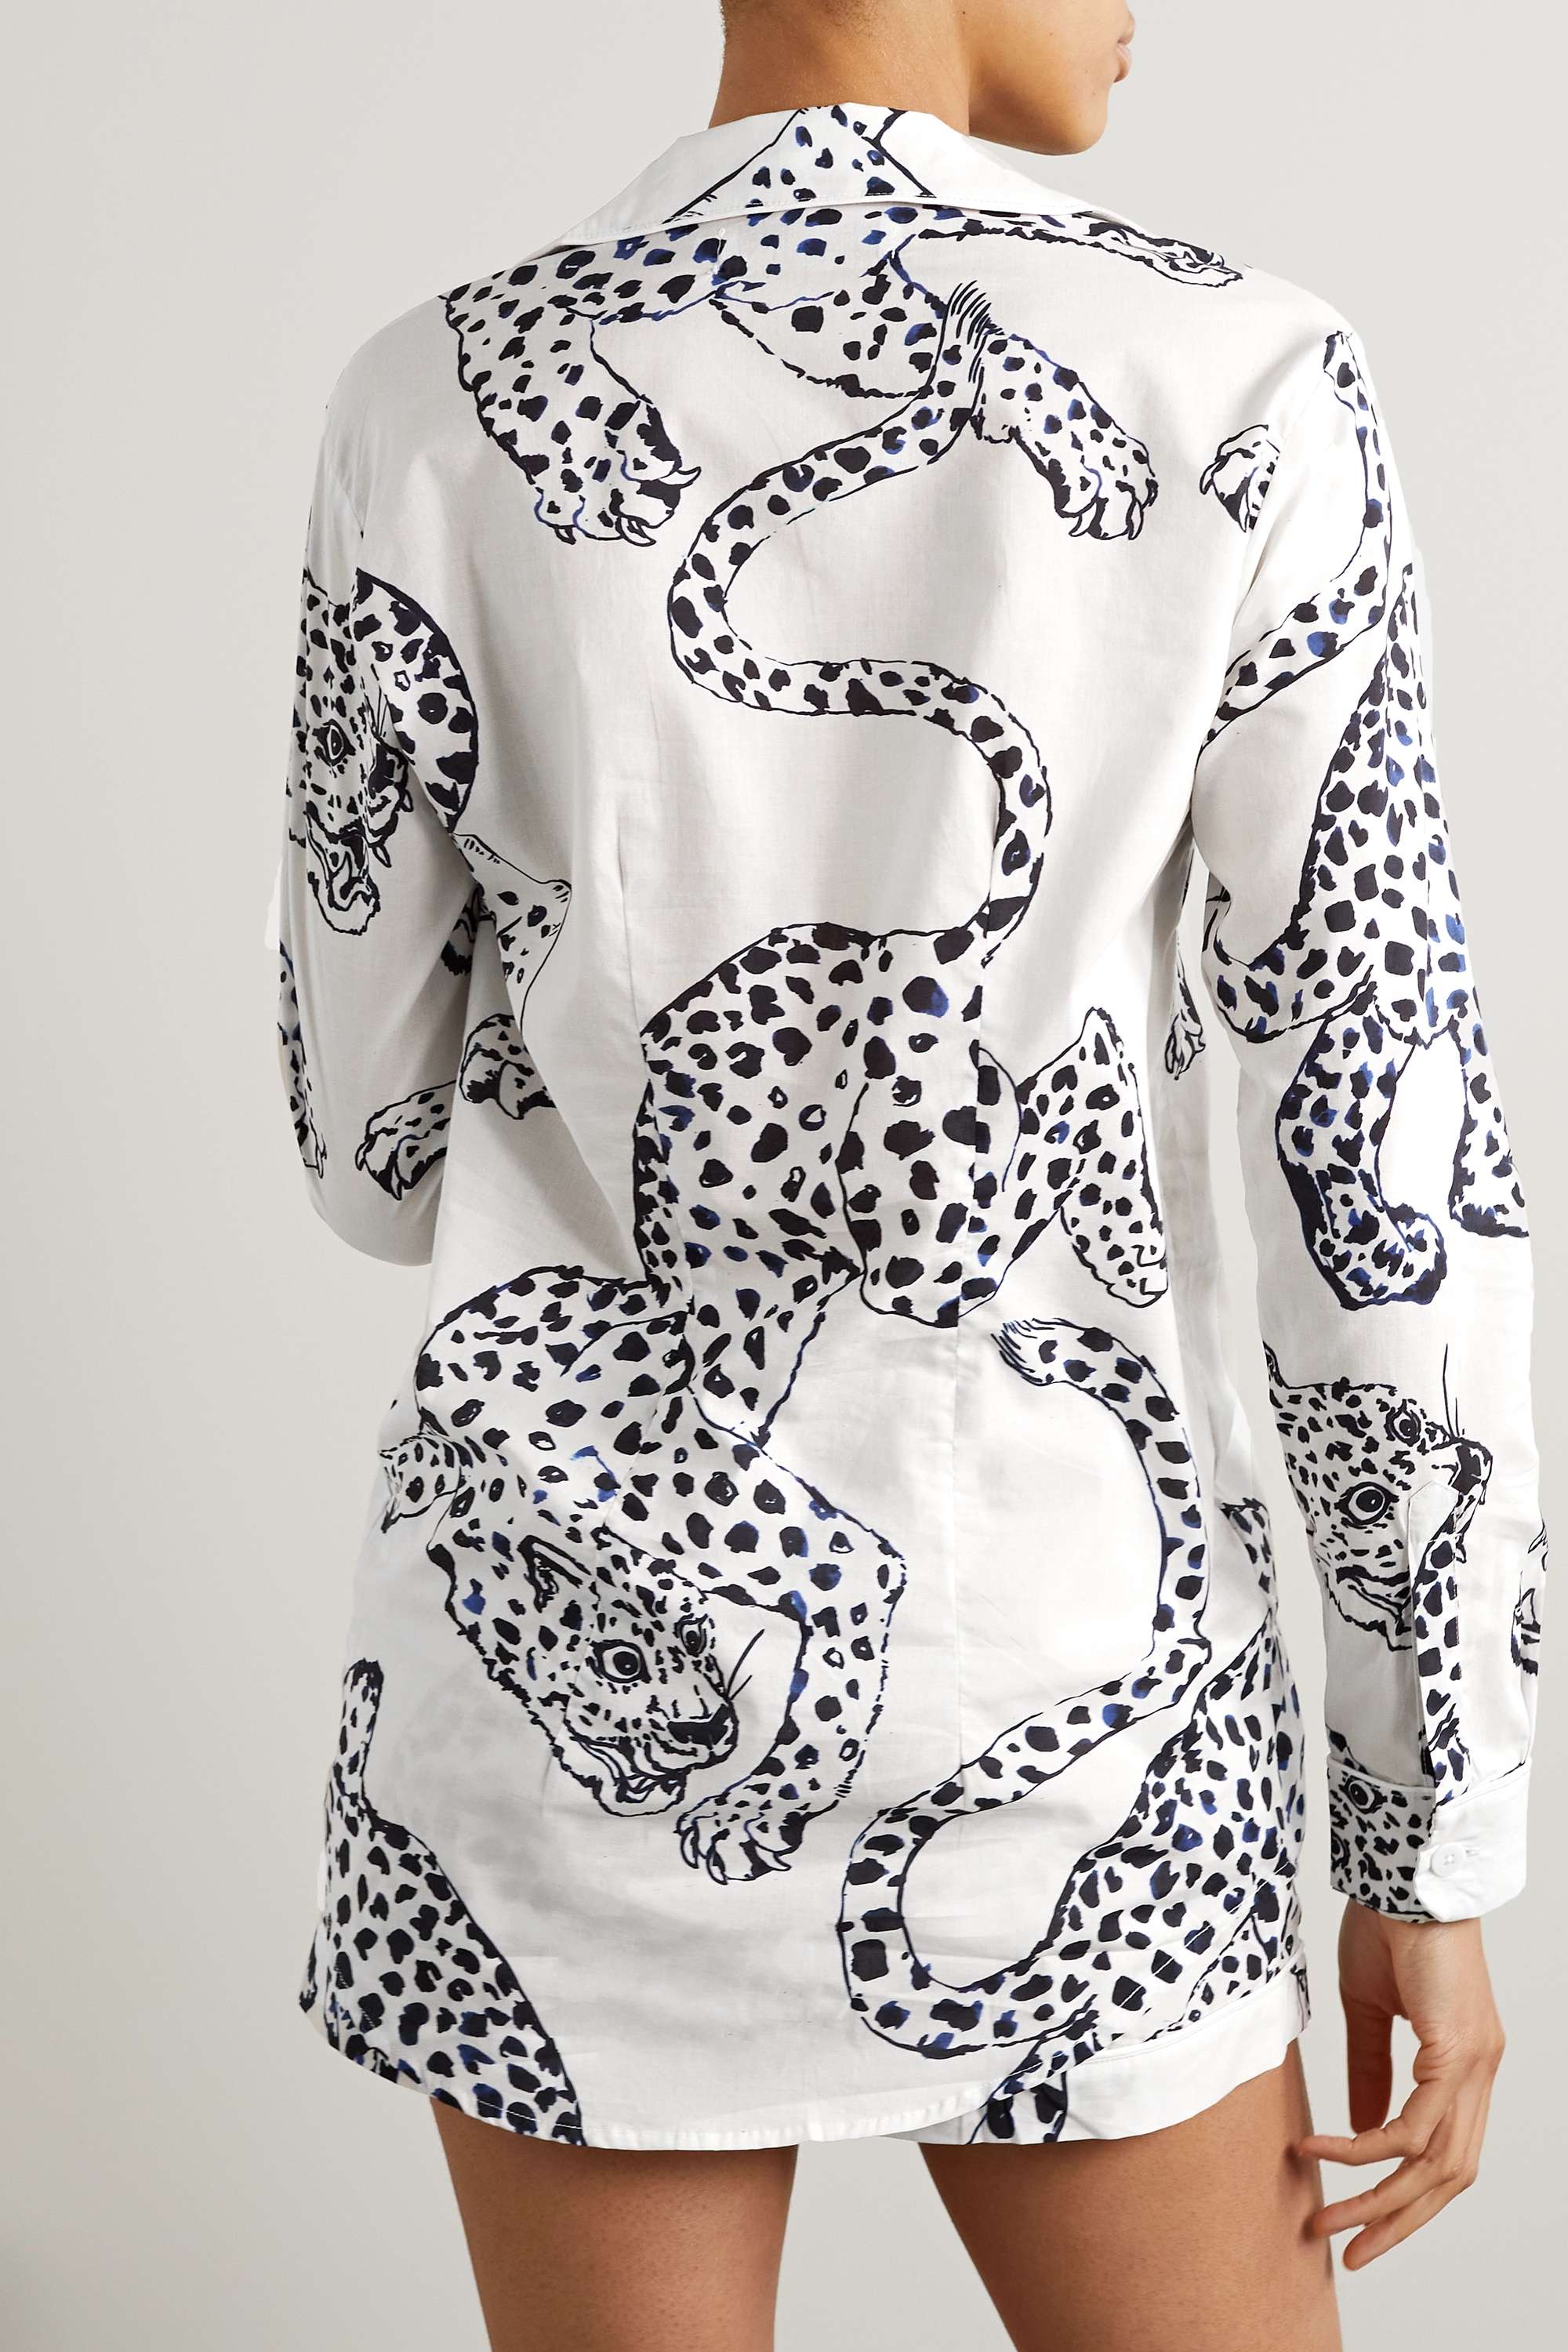 DESMOND & DEMPSEY + NET SUSTAIN пижамный комплект из органического хлопка и вуали с принтом, белый